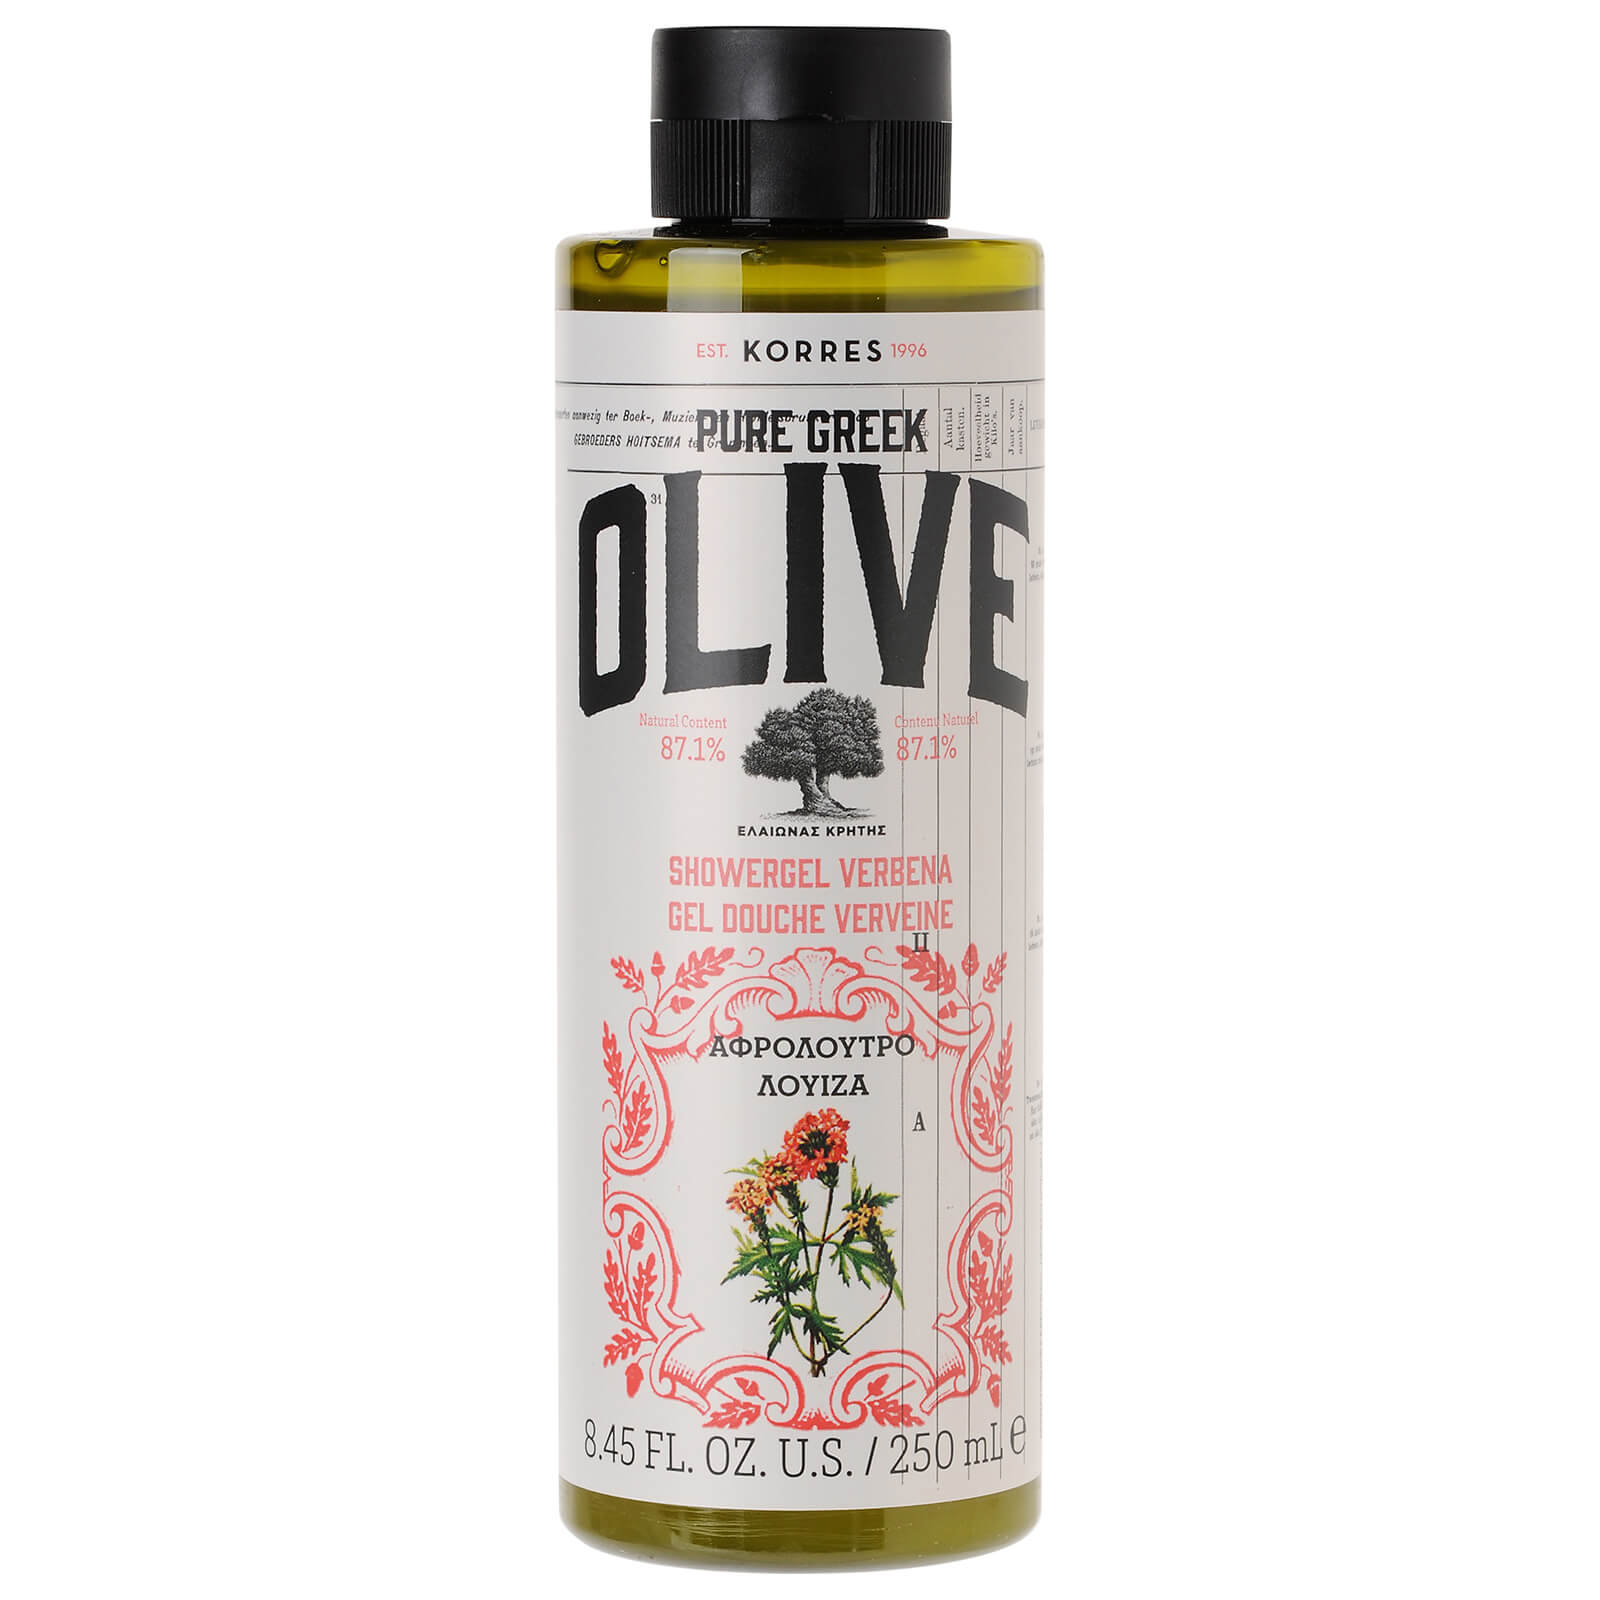 Korres Pure Greek Olive Shower Gel Verbena